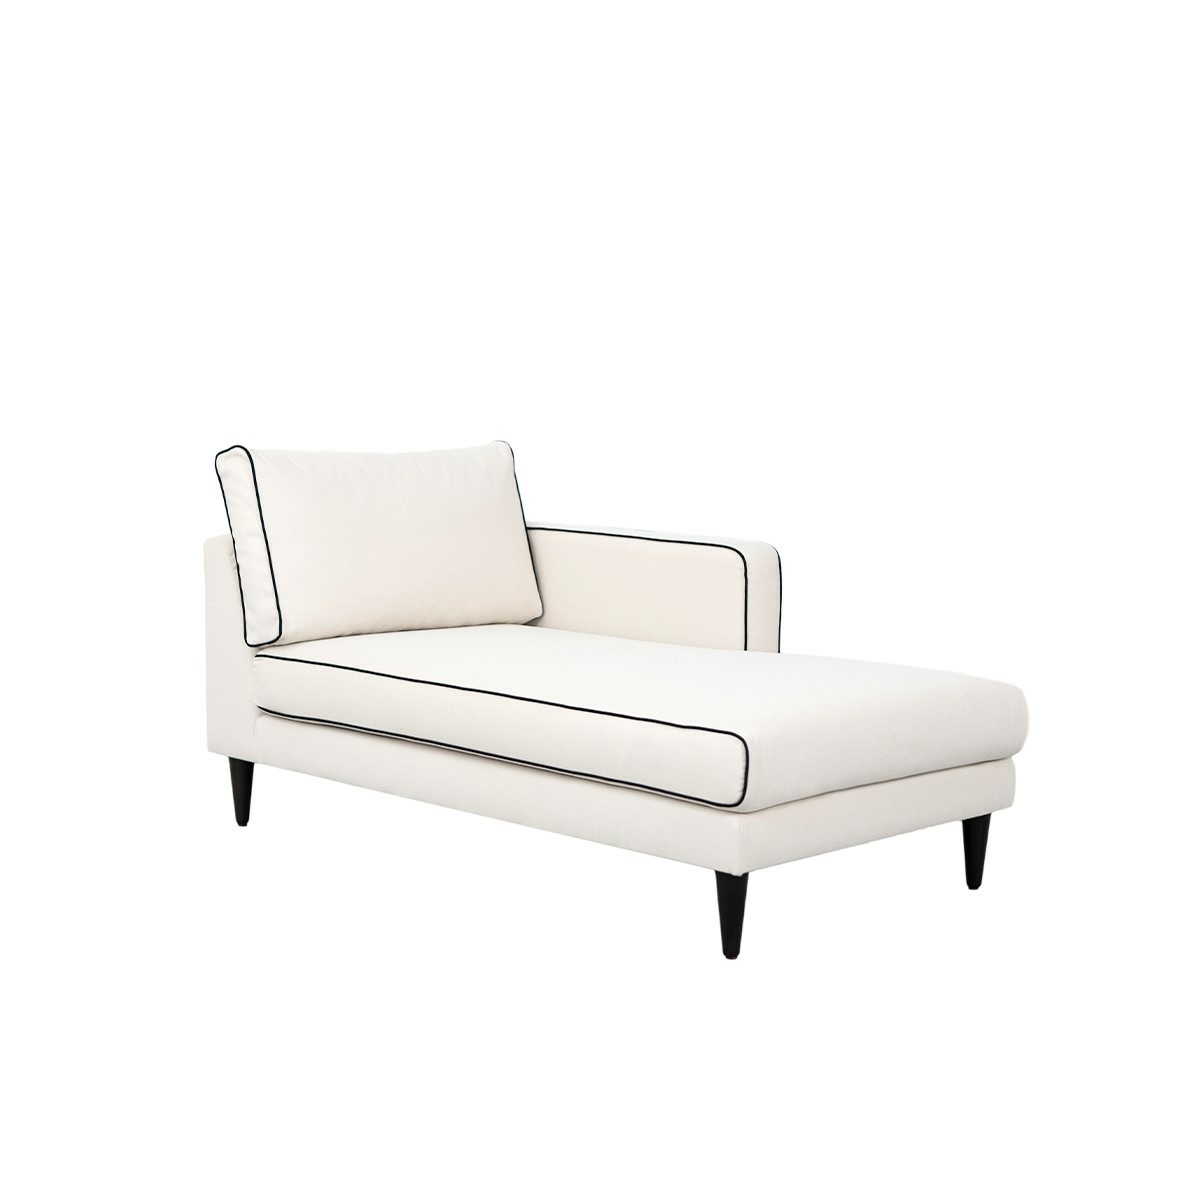 Noa sofa - Right armrest, L180 x P90 x H80 cm - Cotton - image 1